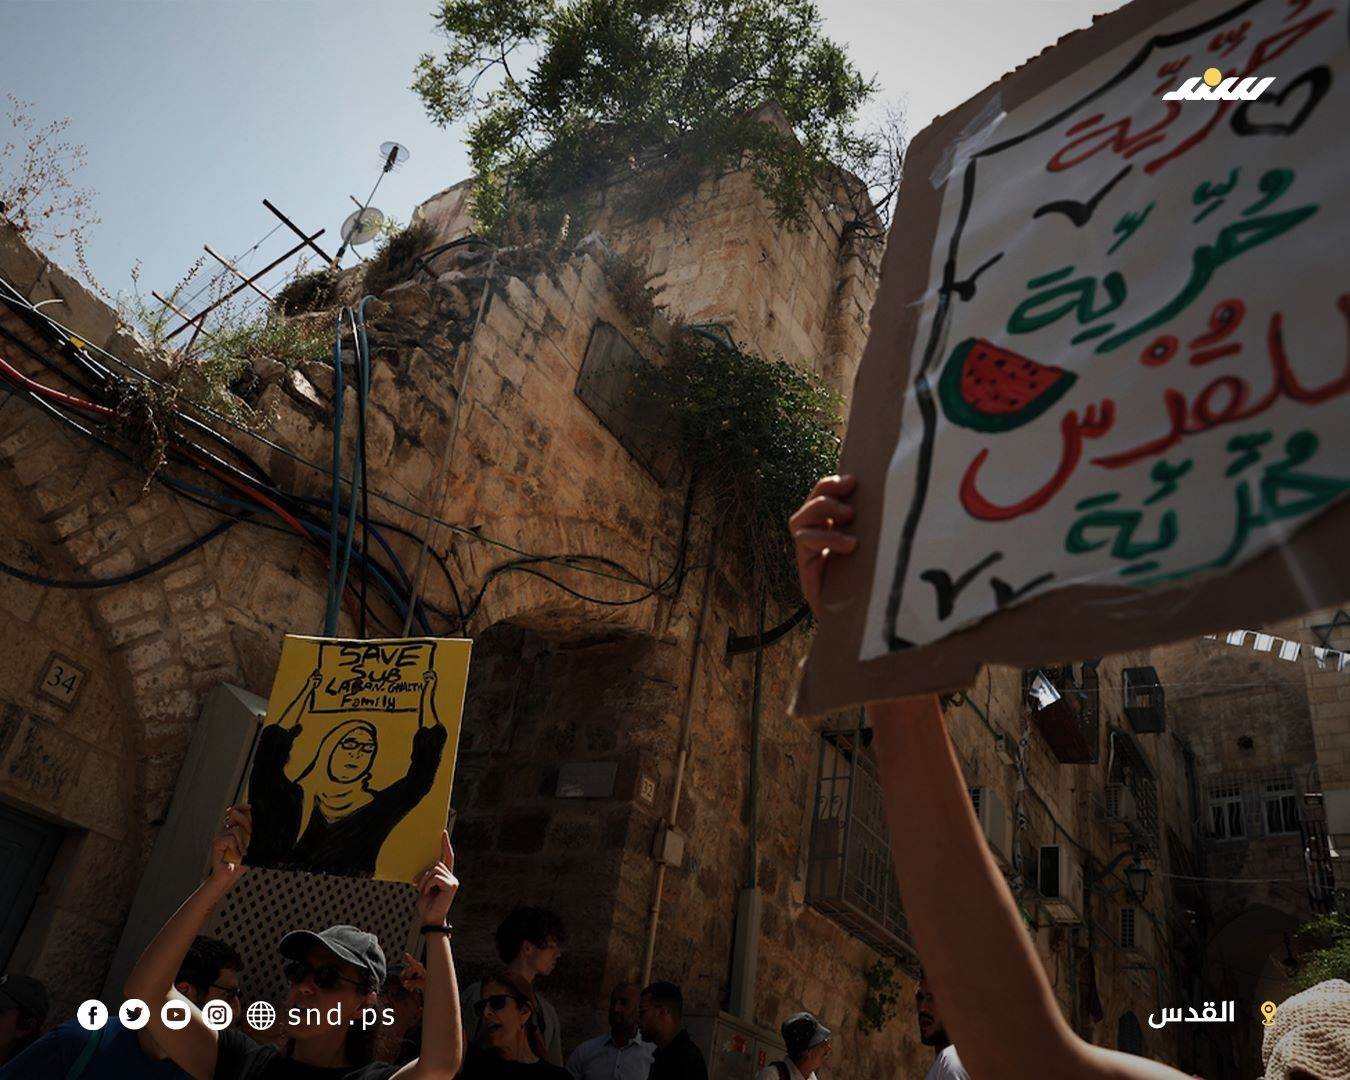 وقفة تضامنية مع عائلة صب لبن بالبلدة القديمة في القدس احتجاجا على تهجيرها قسريا من منزلها (3).jpg